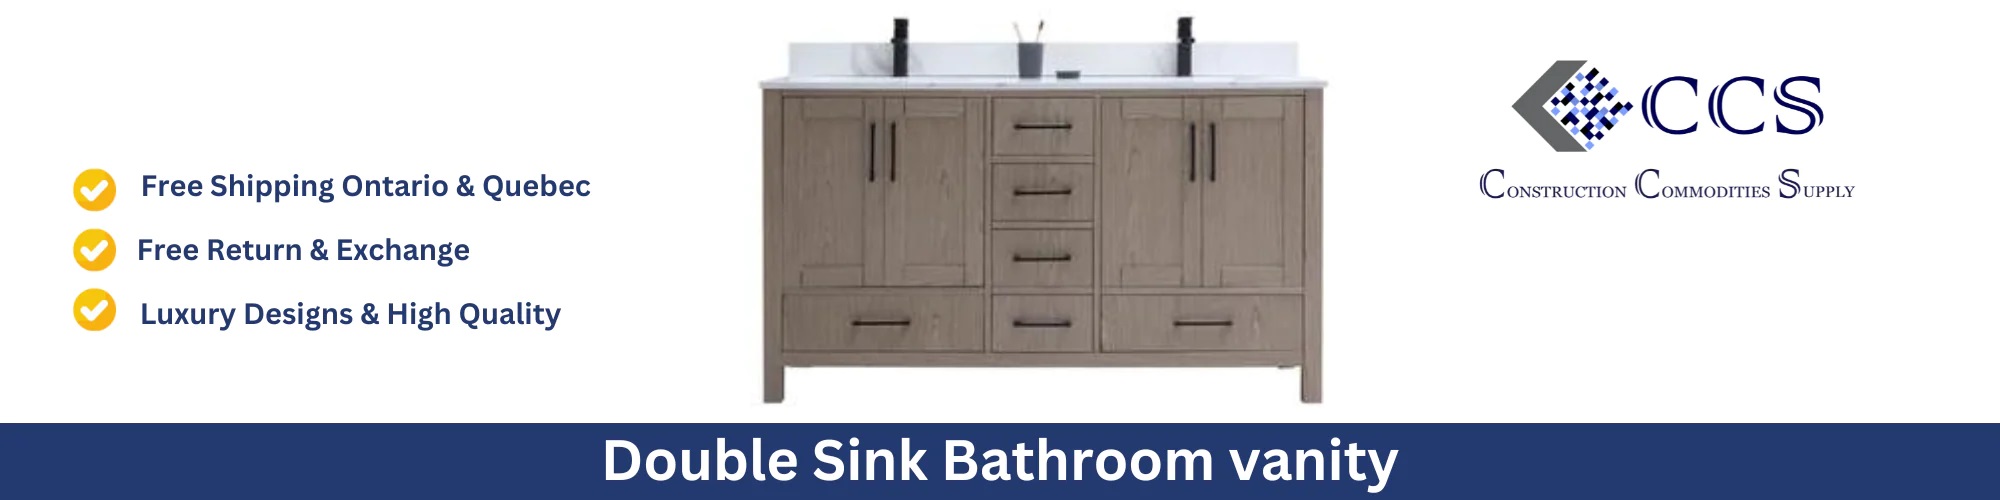 Double Sink Bathroom Vanities